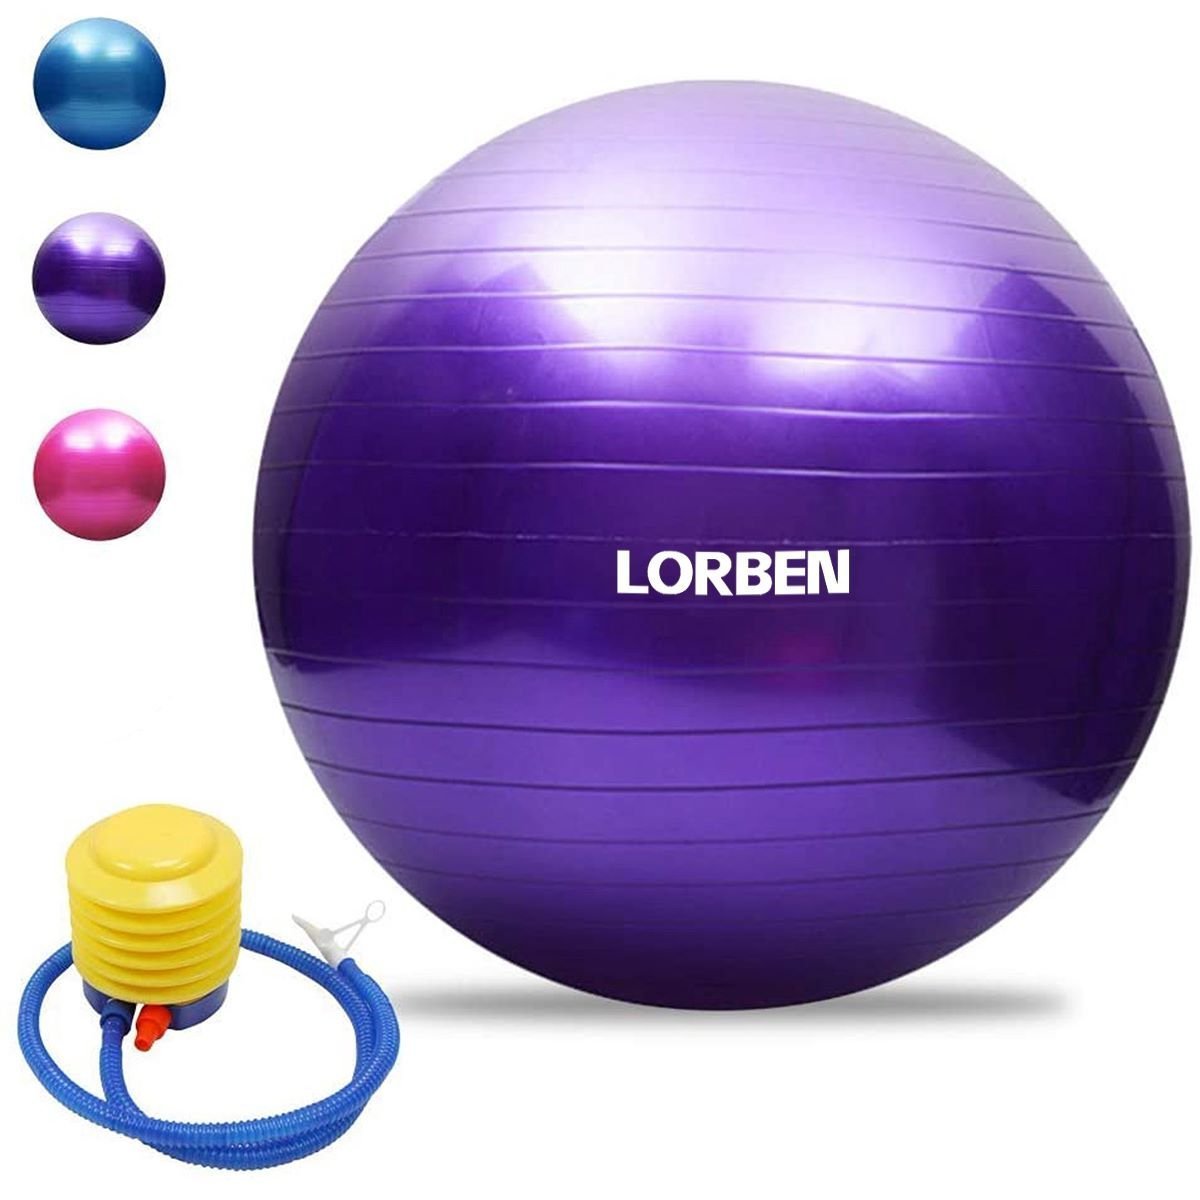 Bola de Pilates Yoga Funcional Lorben com Bomba Suporta até 150 Kg Roxo